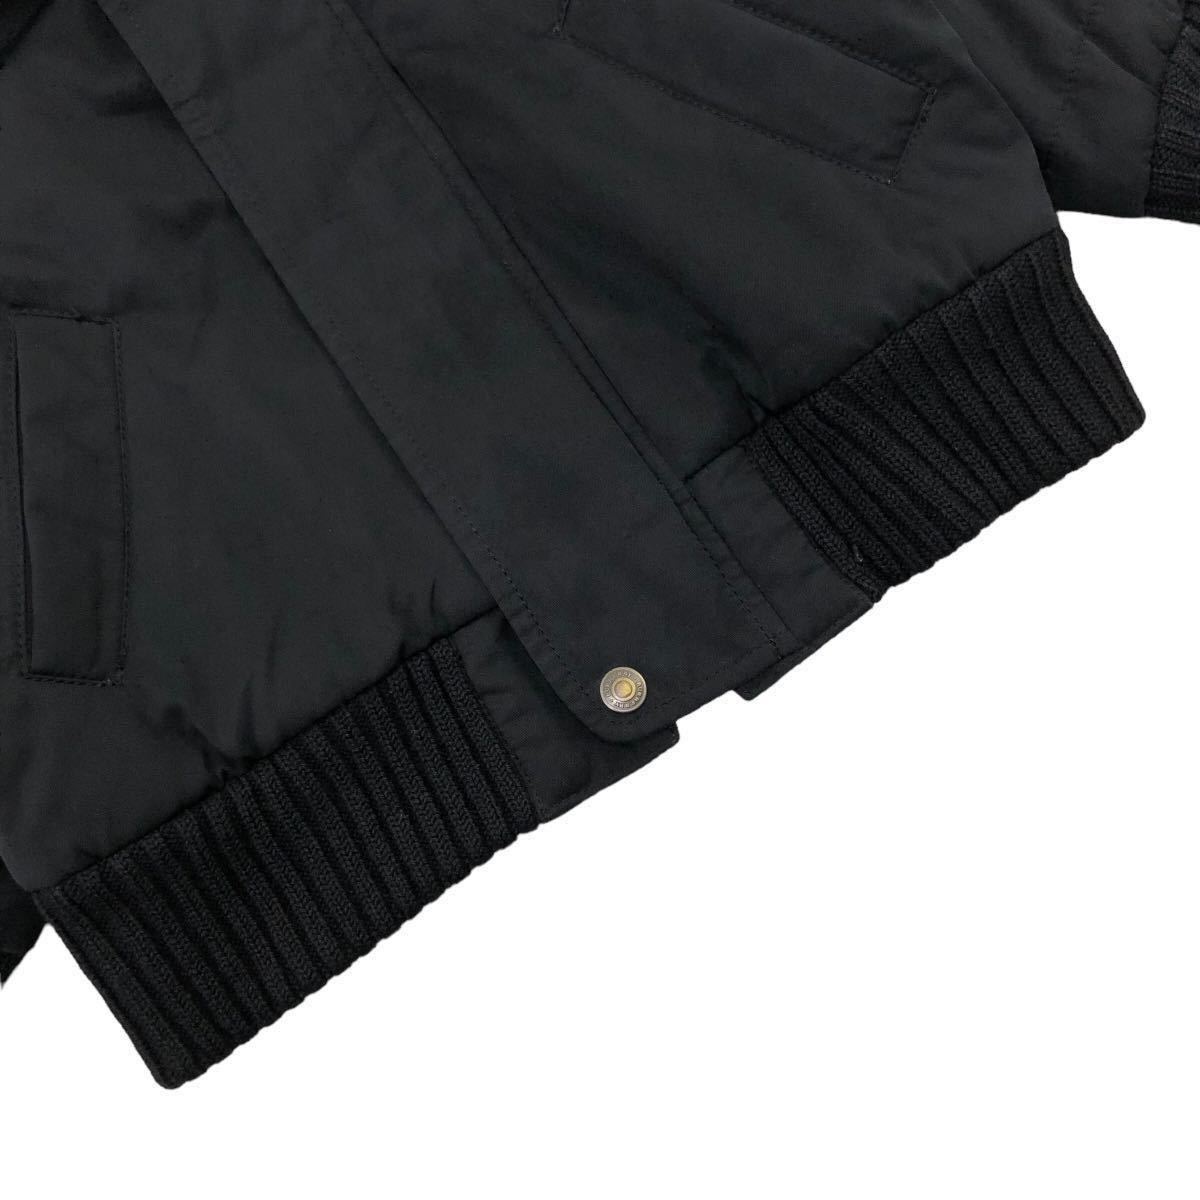 ANB195 BURBERRY バーバリー 中綿 ジップアップ ジャケット ジャンパー ブルゾン アウター 上着 羽織り 長袖 ブラック 黒 キッズ 100A_画像3